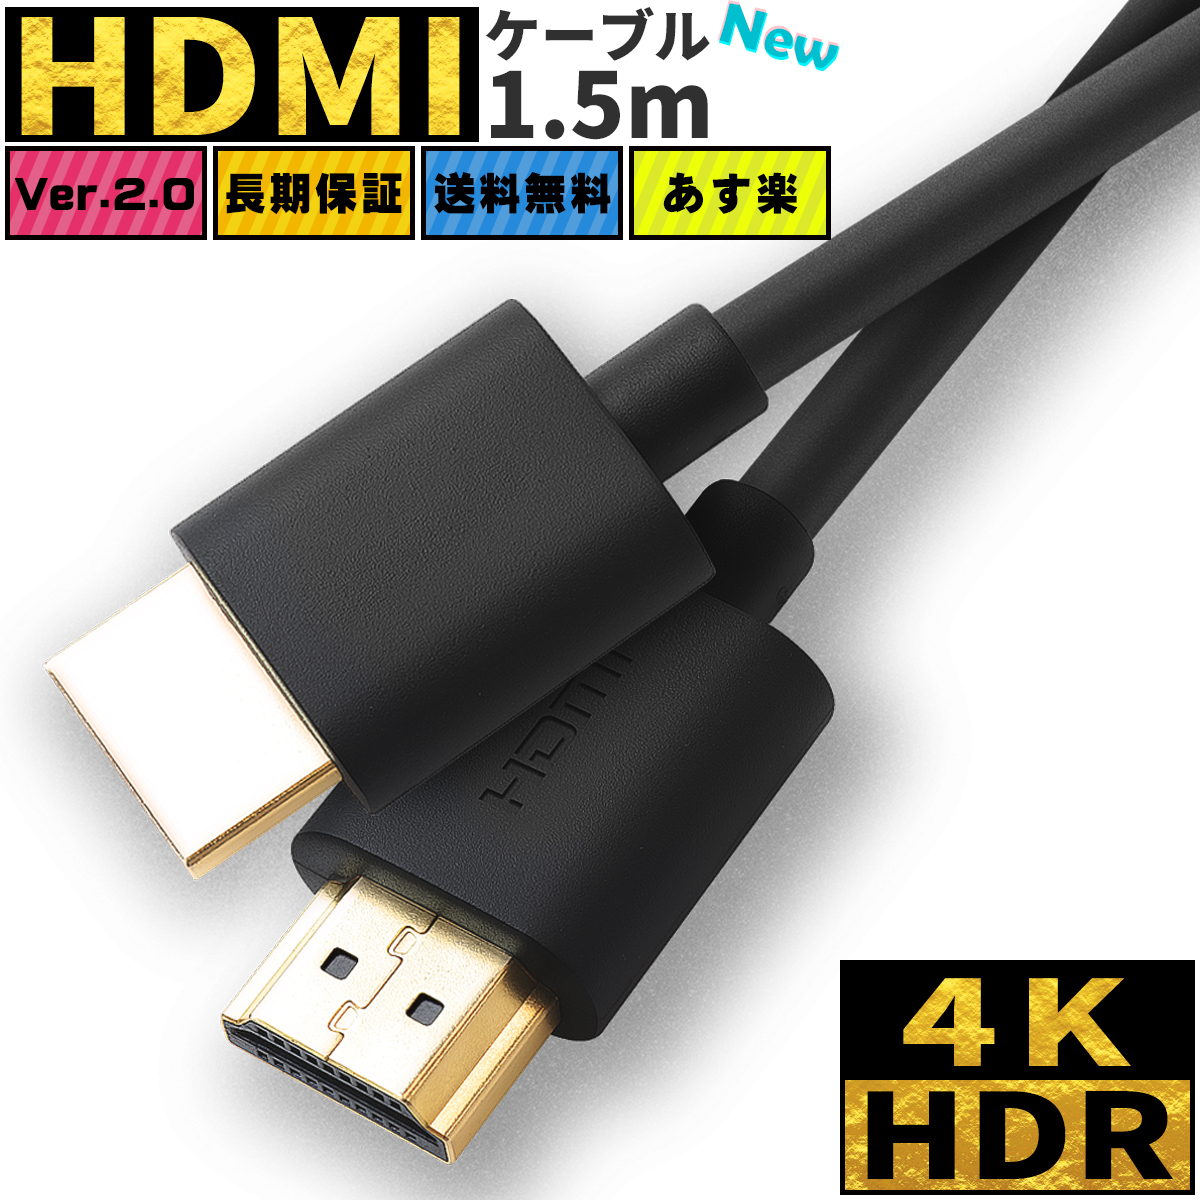 送料無料 HDMI 定番 ハイスピード HDMIケーブル DVDプレーヤー HDDレコーダー ケーブル 1.5m Ver.2.0 4K 8K 60Hz 3D 業務用 tv イーサネット テレビ switch ニンテンドー DM便 スリム ポイント消化 高品質 細線 商い スイッチ